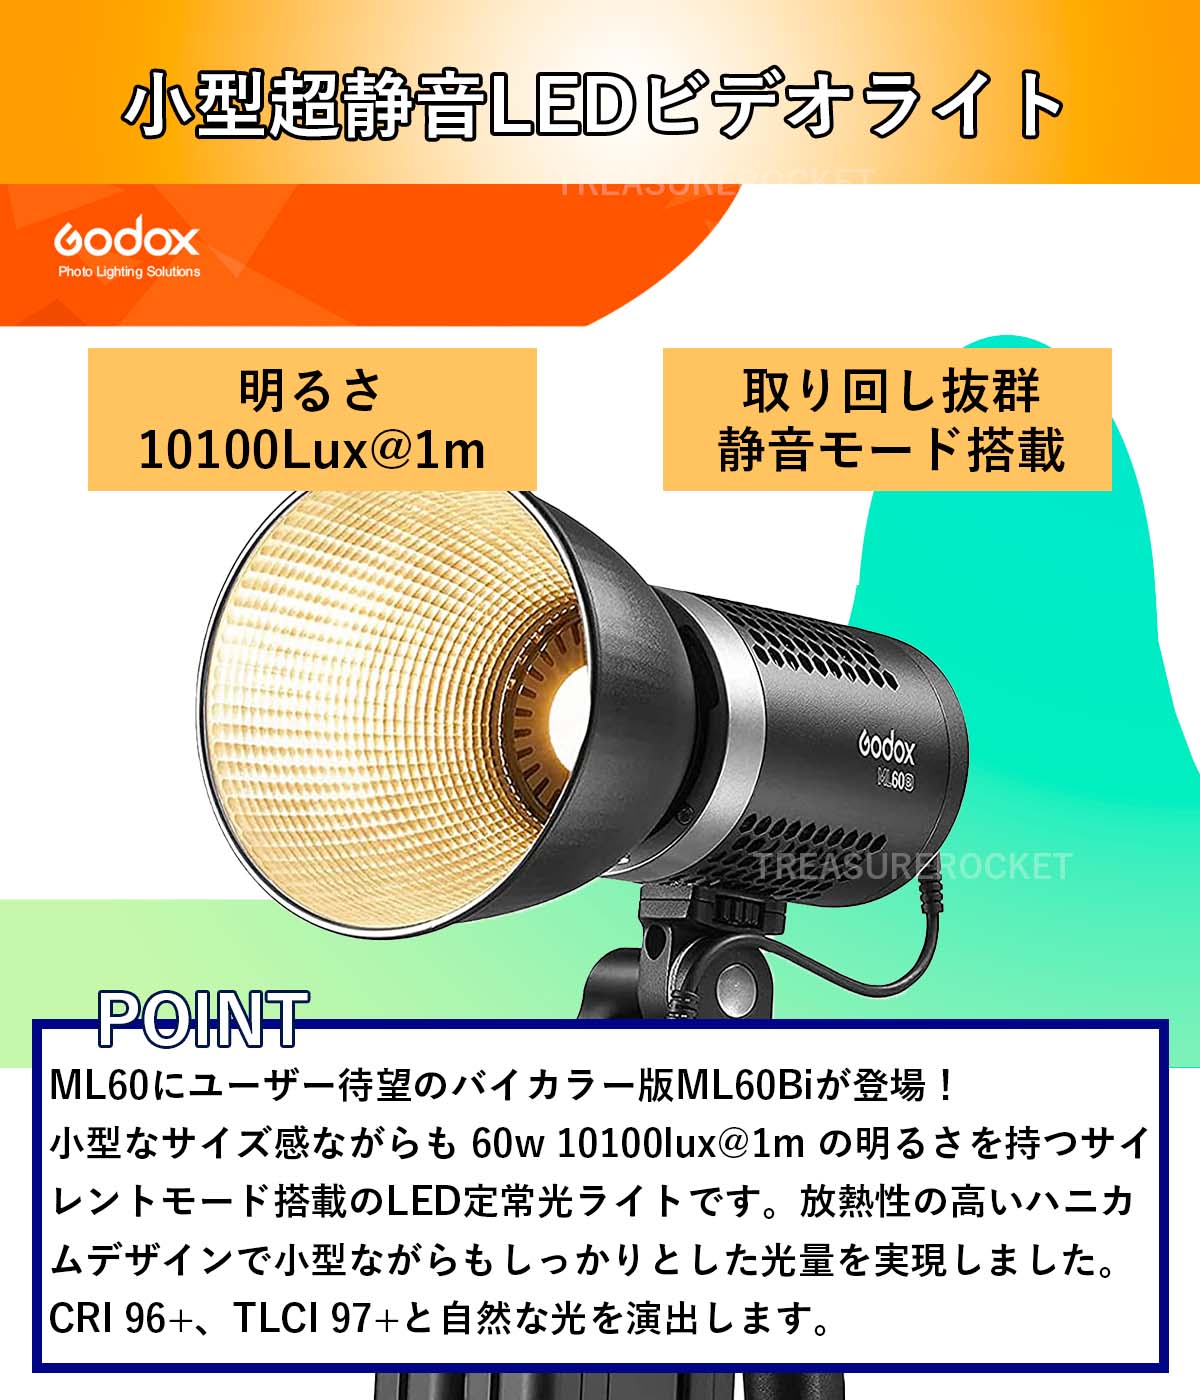 14030円 高級素材使用ブランド GODOX ML60 LEDライト 定常光